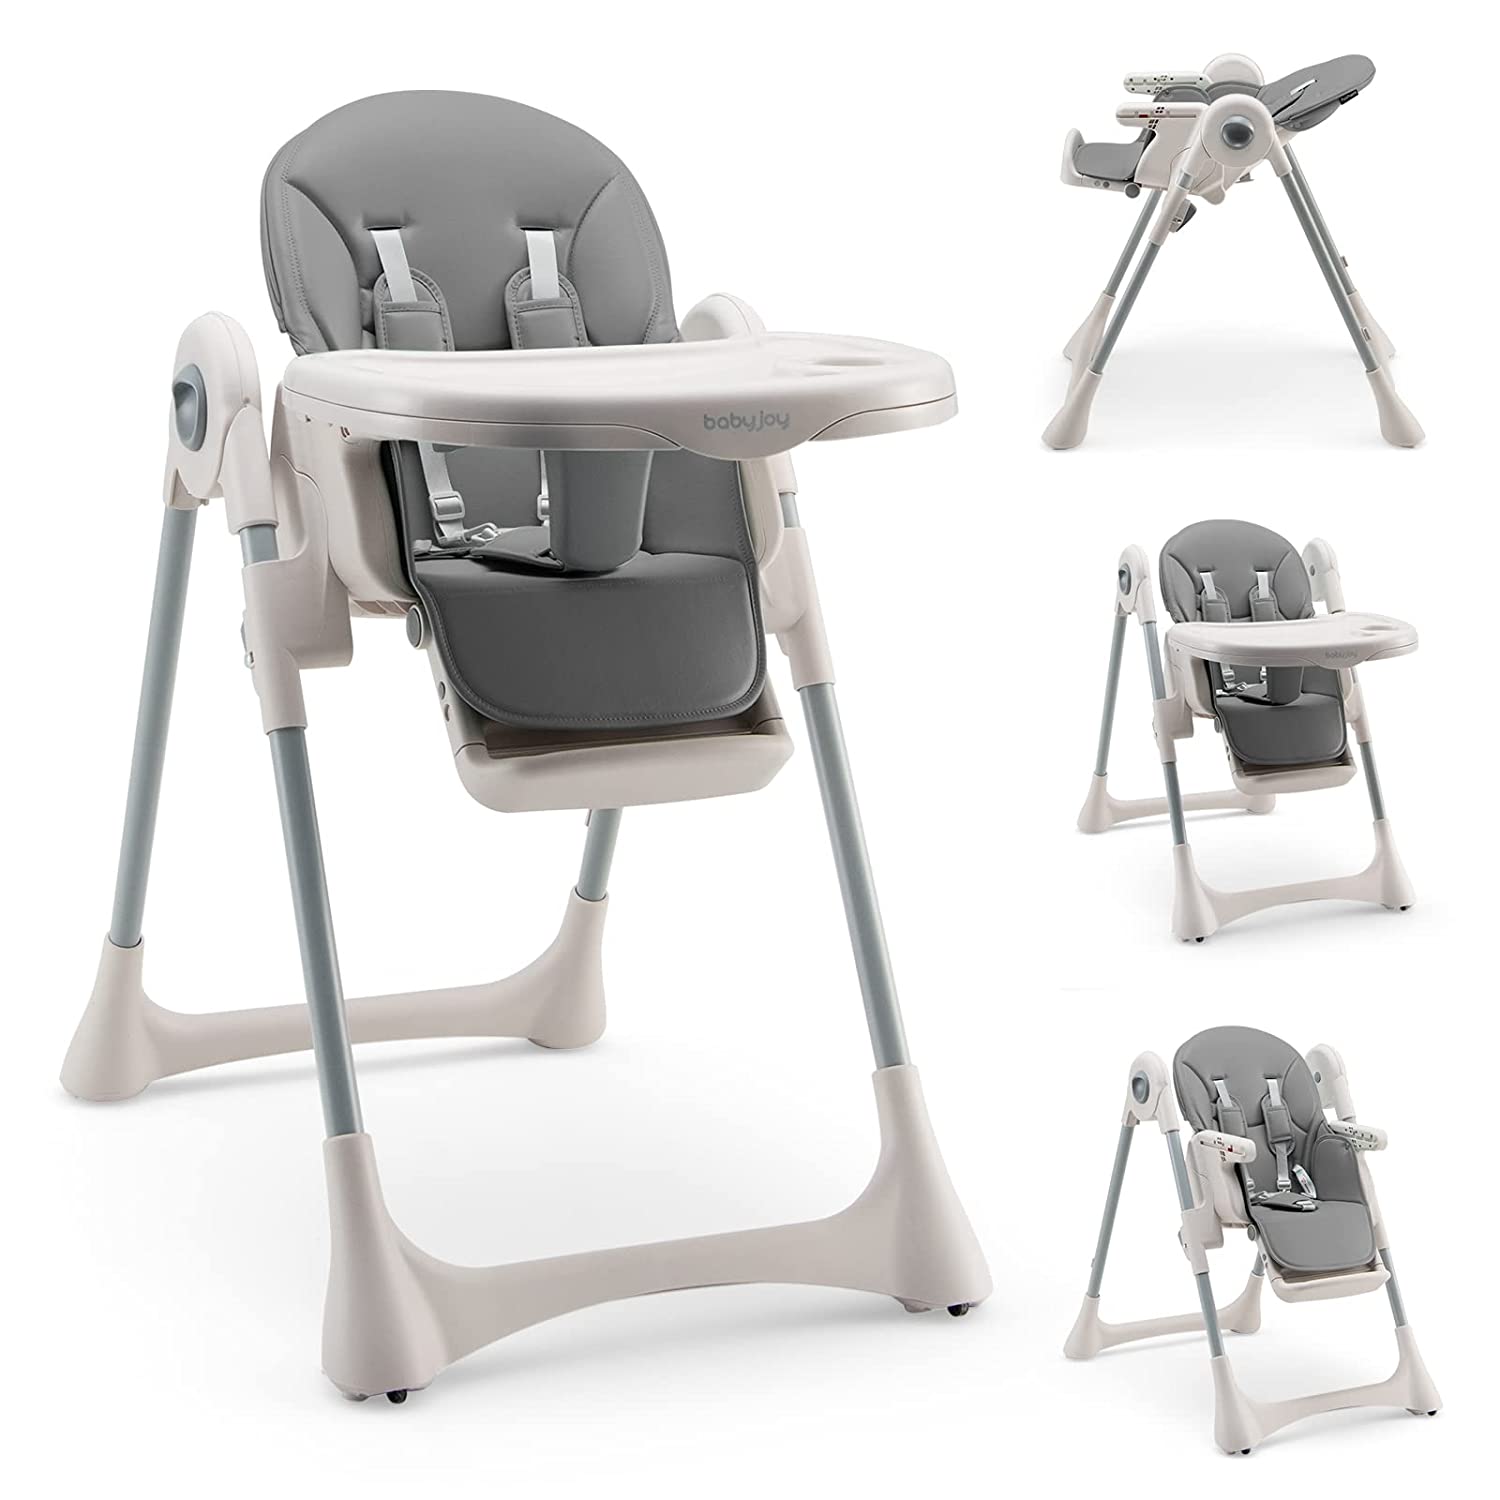 Детский стульчик-трансформер для кормления Baby Joy, серый детское кресло для кормления многофункциональное со звуком съемное детское кресло для кормления мультяшное звуковое кресло стул для мла